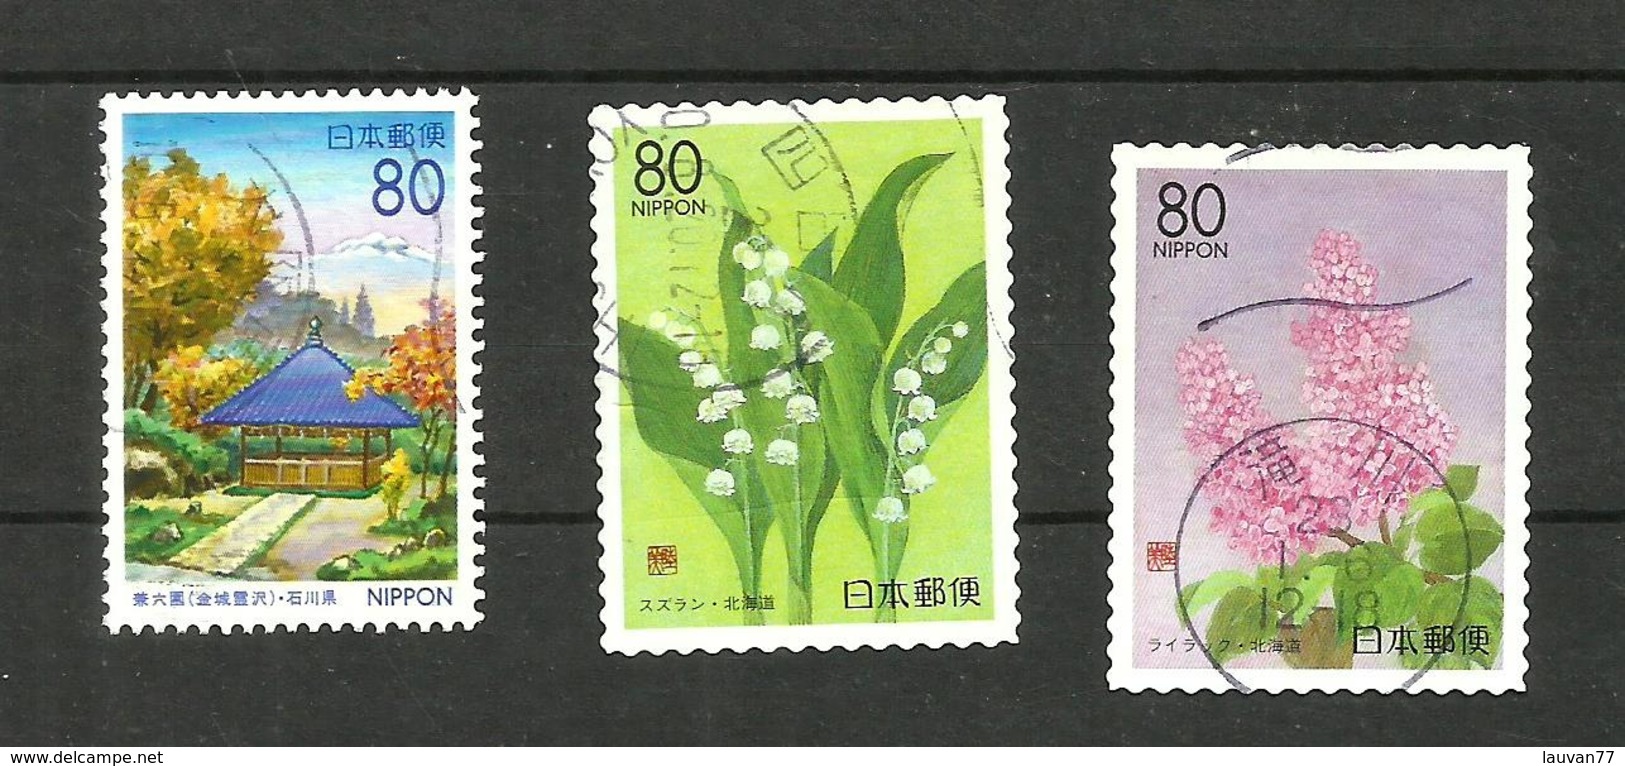 Japon N°2546, 2559, 2560 Cote 3.20 Euros - Used Stamps